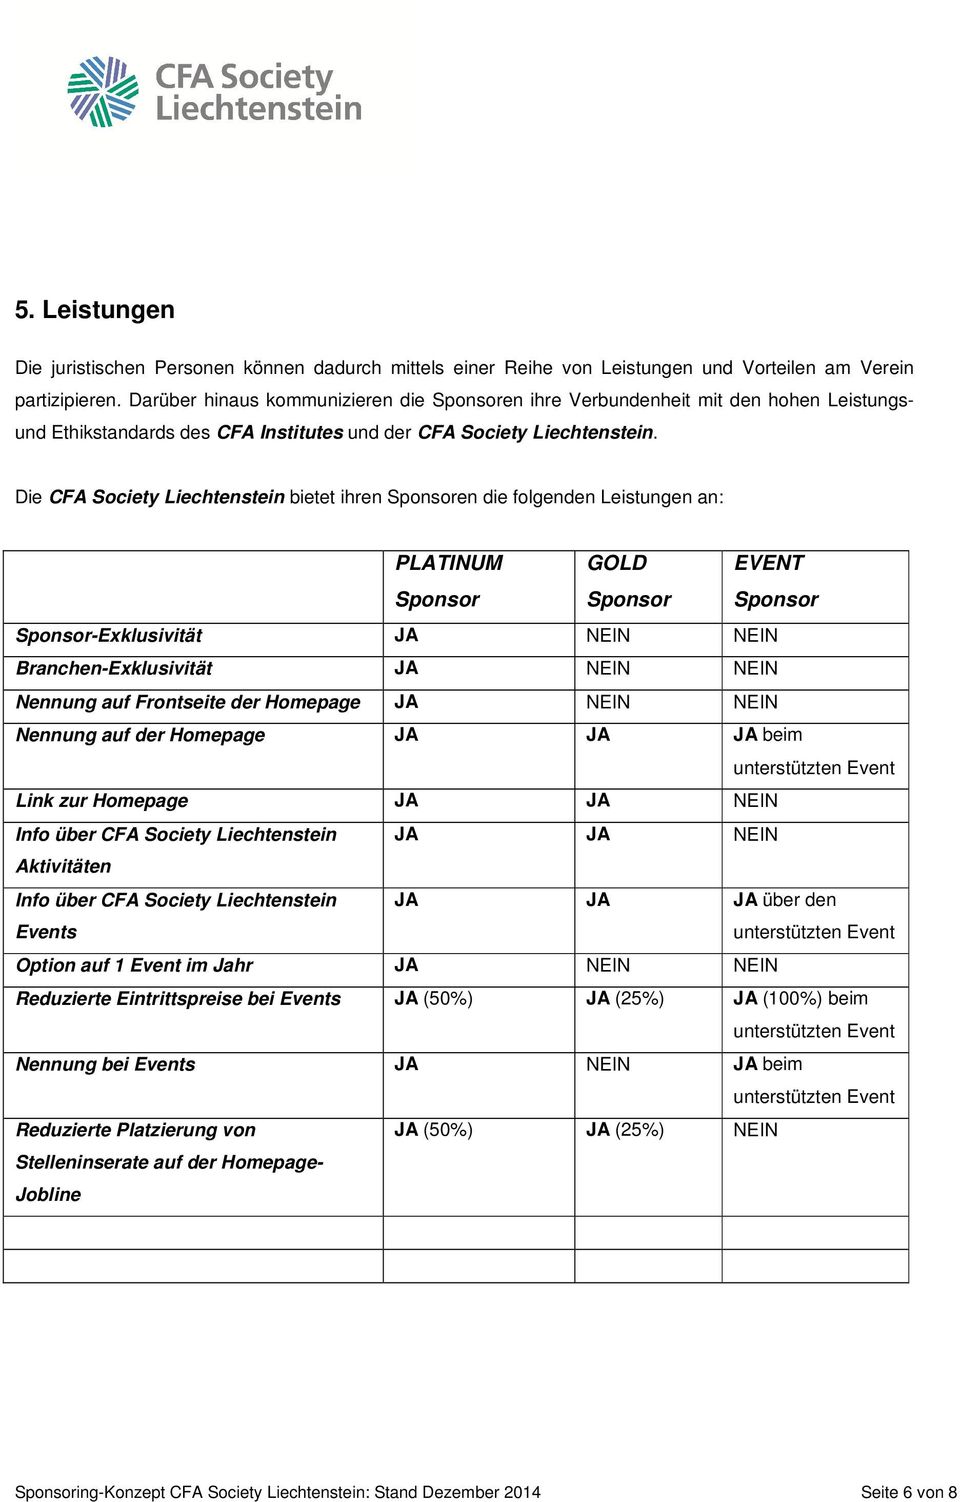 Die CFA Society Liechtenstein bietet ihren en die folgenden Leistungen an: PLATINUM GOLD EVENT -Exklusivität JA NEIN NEIN Branchen-Exklusivität JA NEIN NEIN Nennung auf Frontseite der Homepage JA